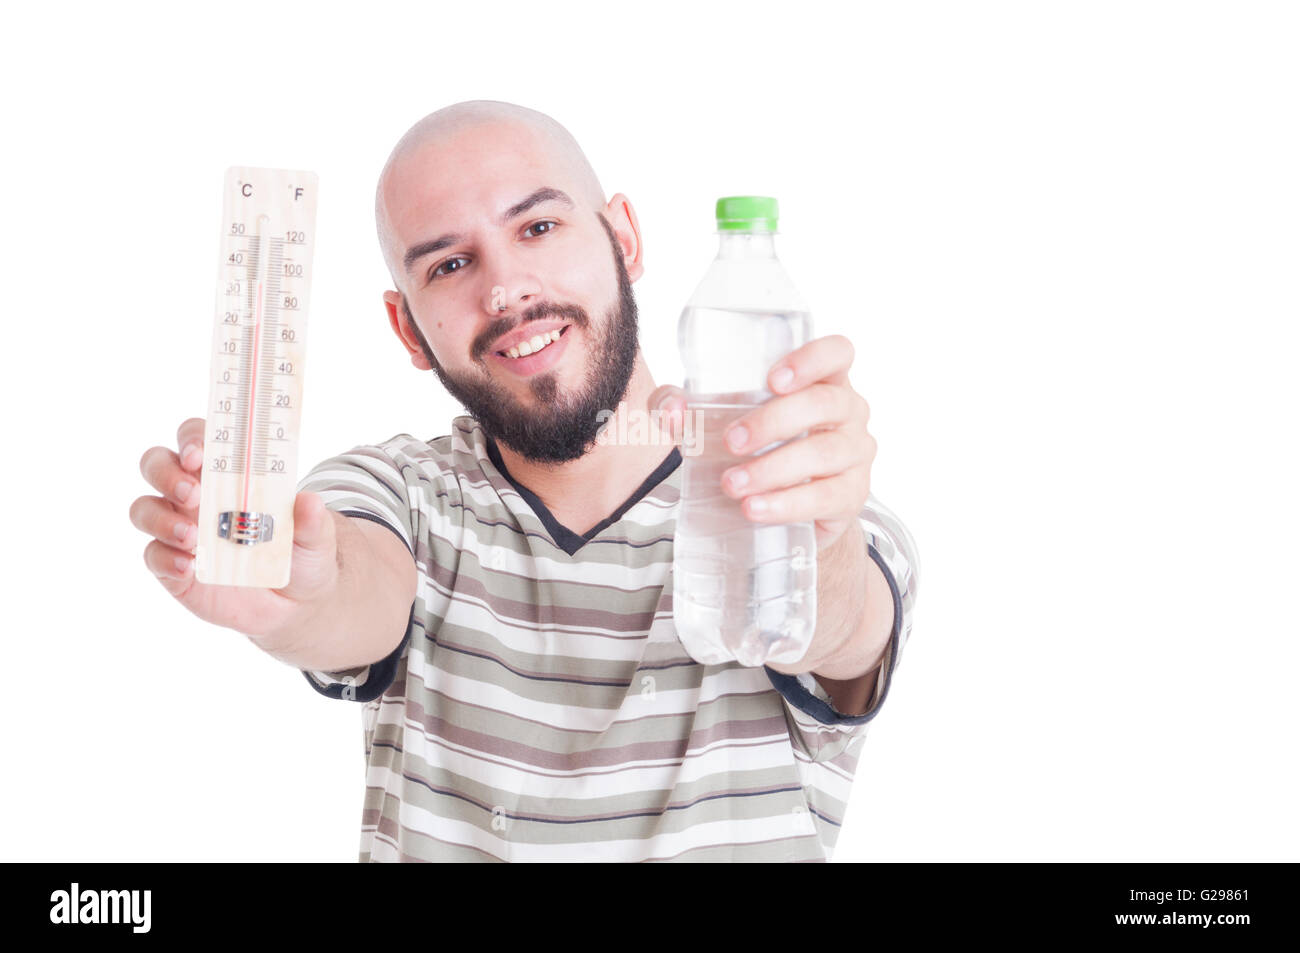 Heiße Sommer und Austrocknung Konzept mit Mann, Thermometer und kalte Wasserflasche Stockfoto